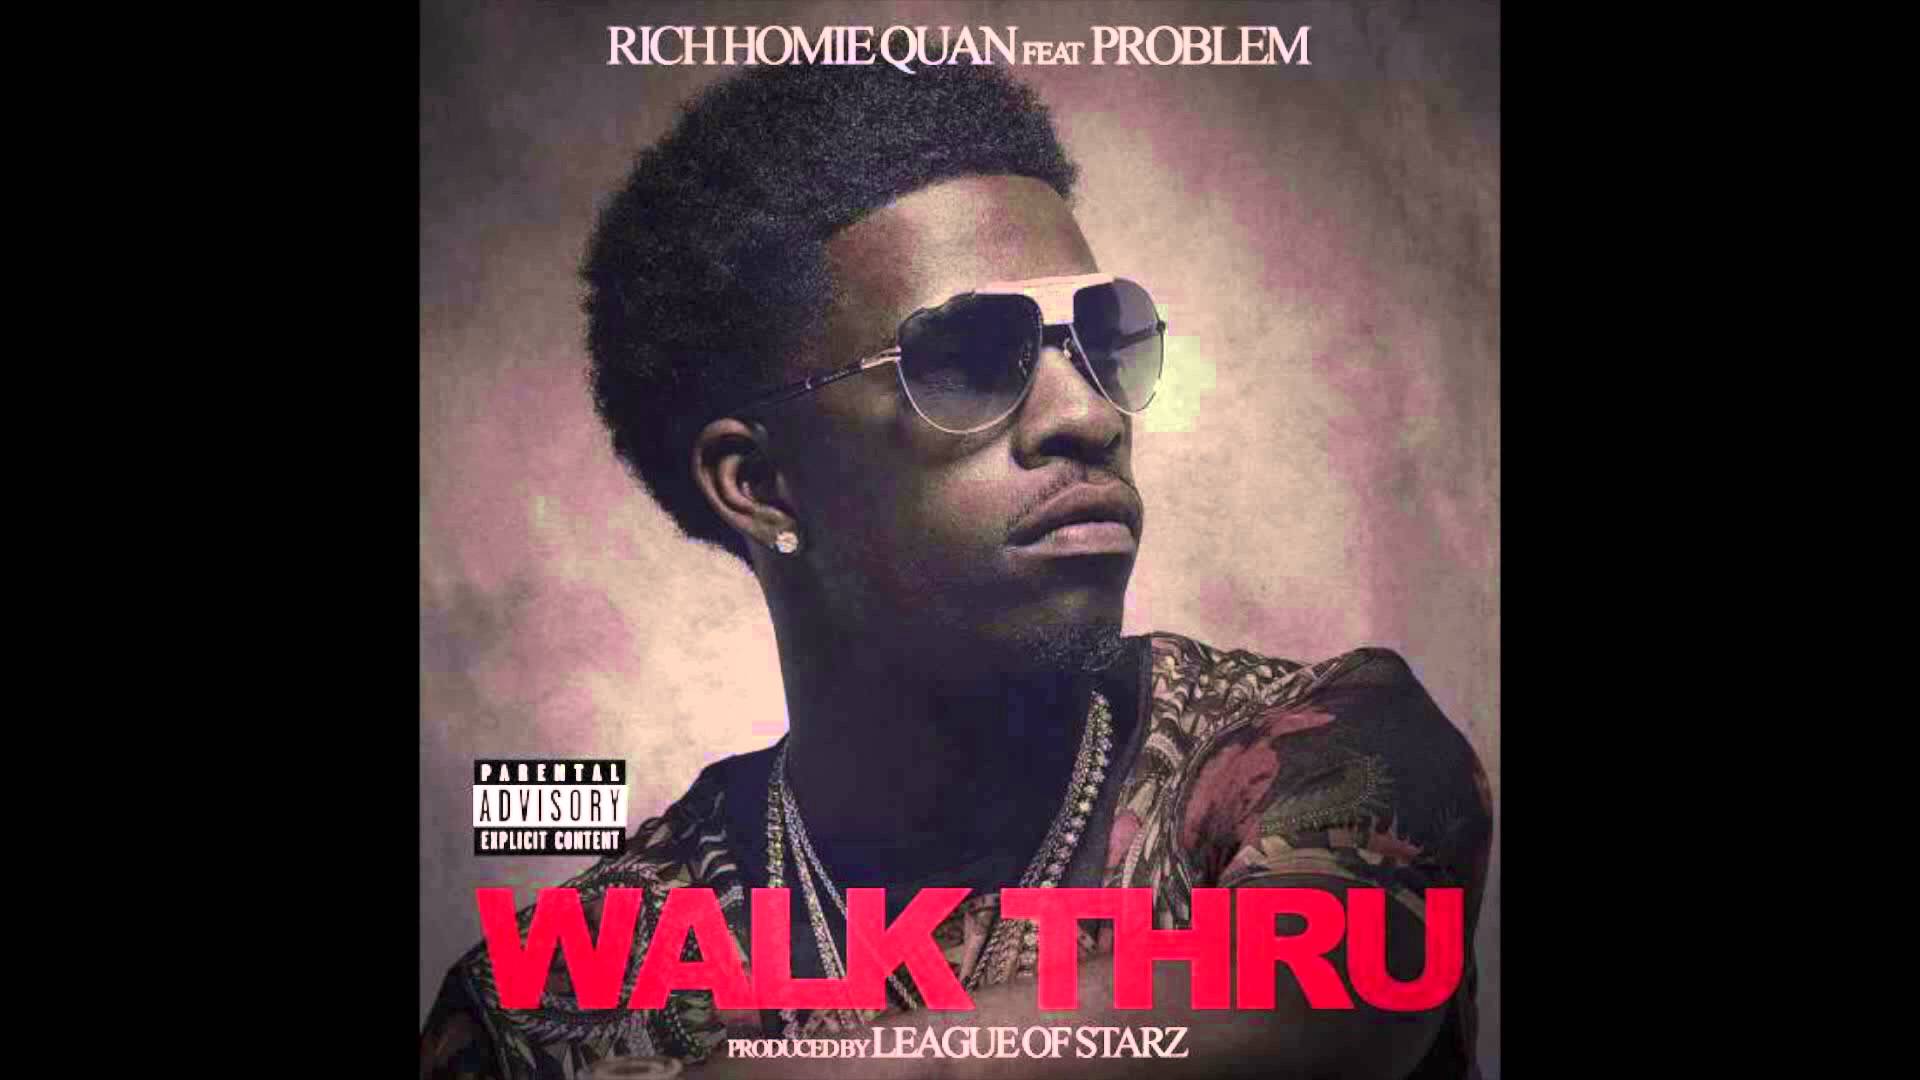 Walk Thru by: Rich Homie Quan ft. 